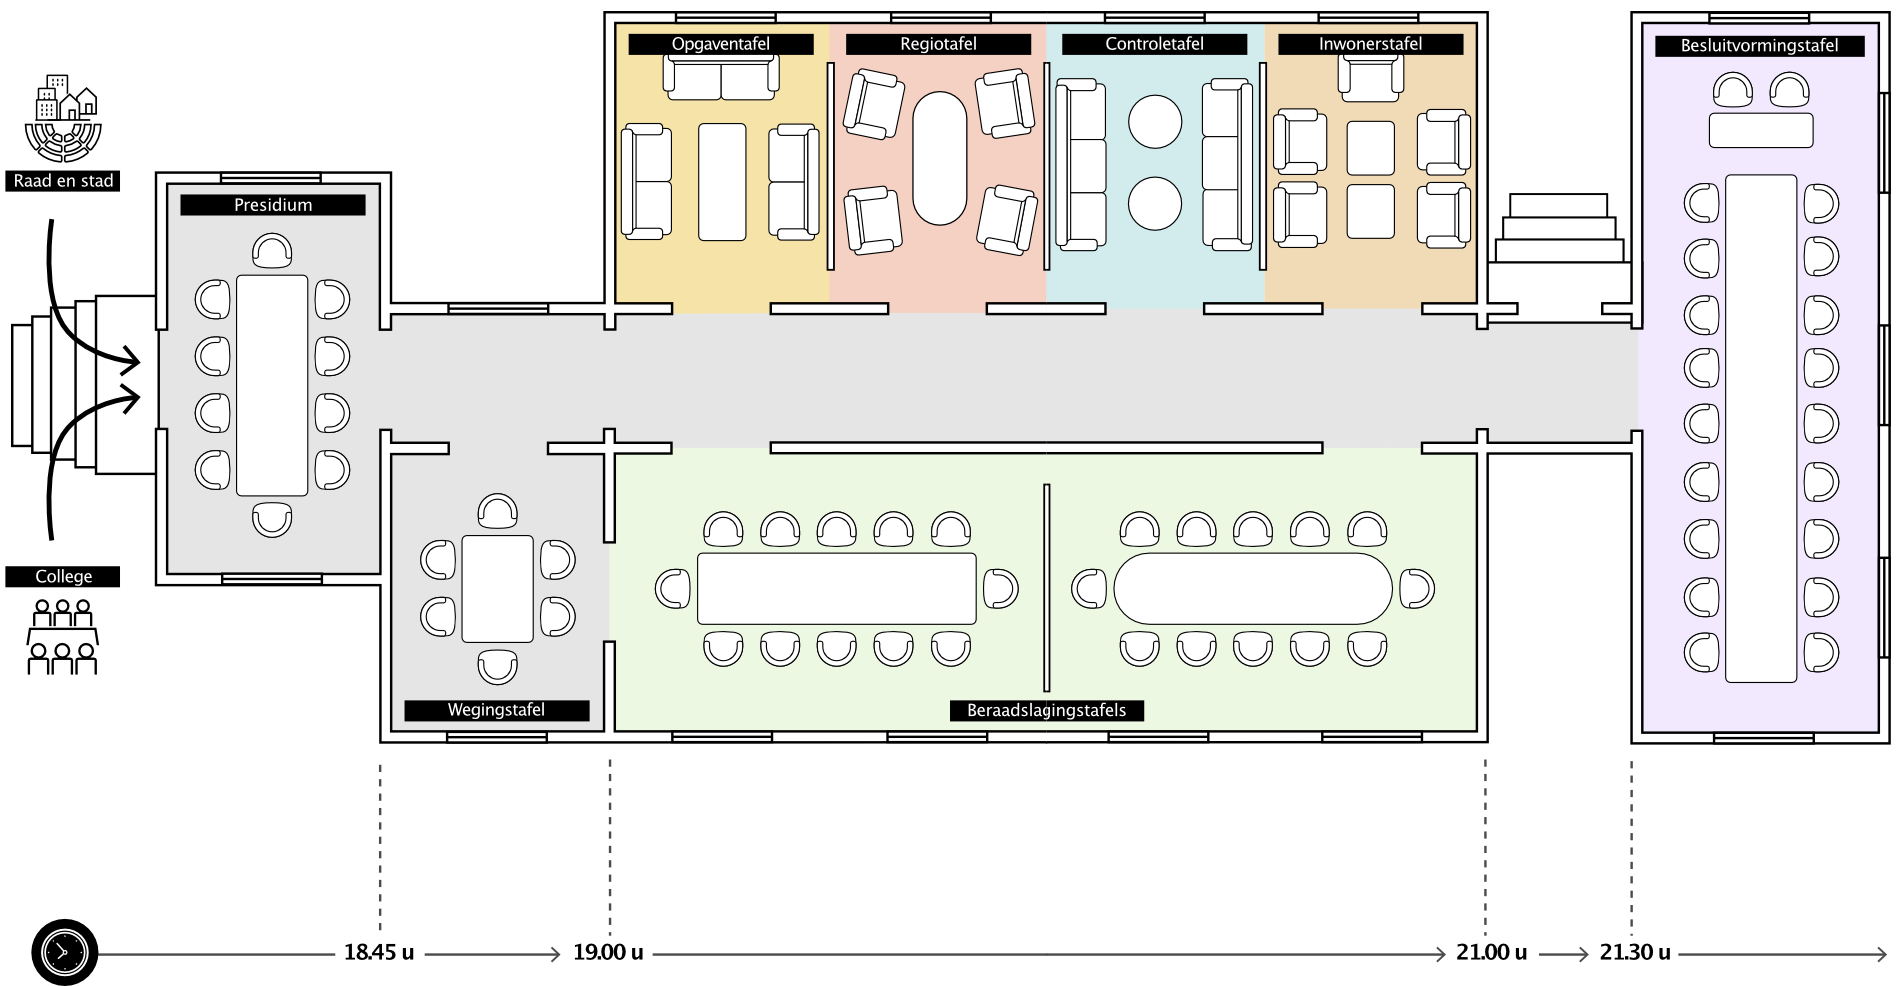 Illustratie van het nieuwe vergadermodel met kamers en tafels